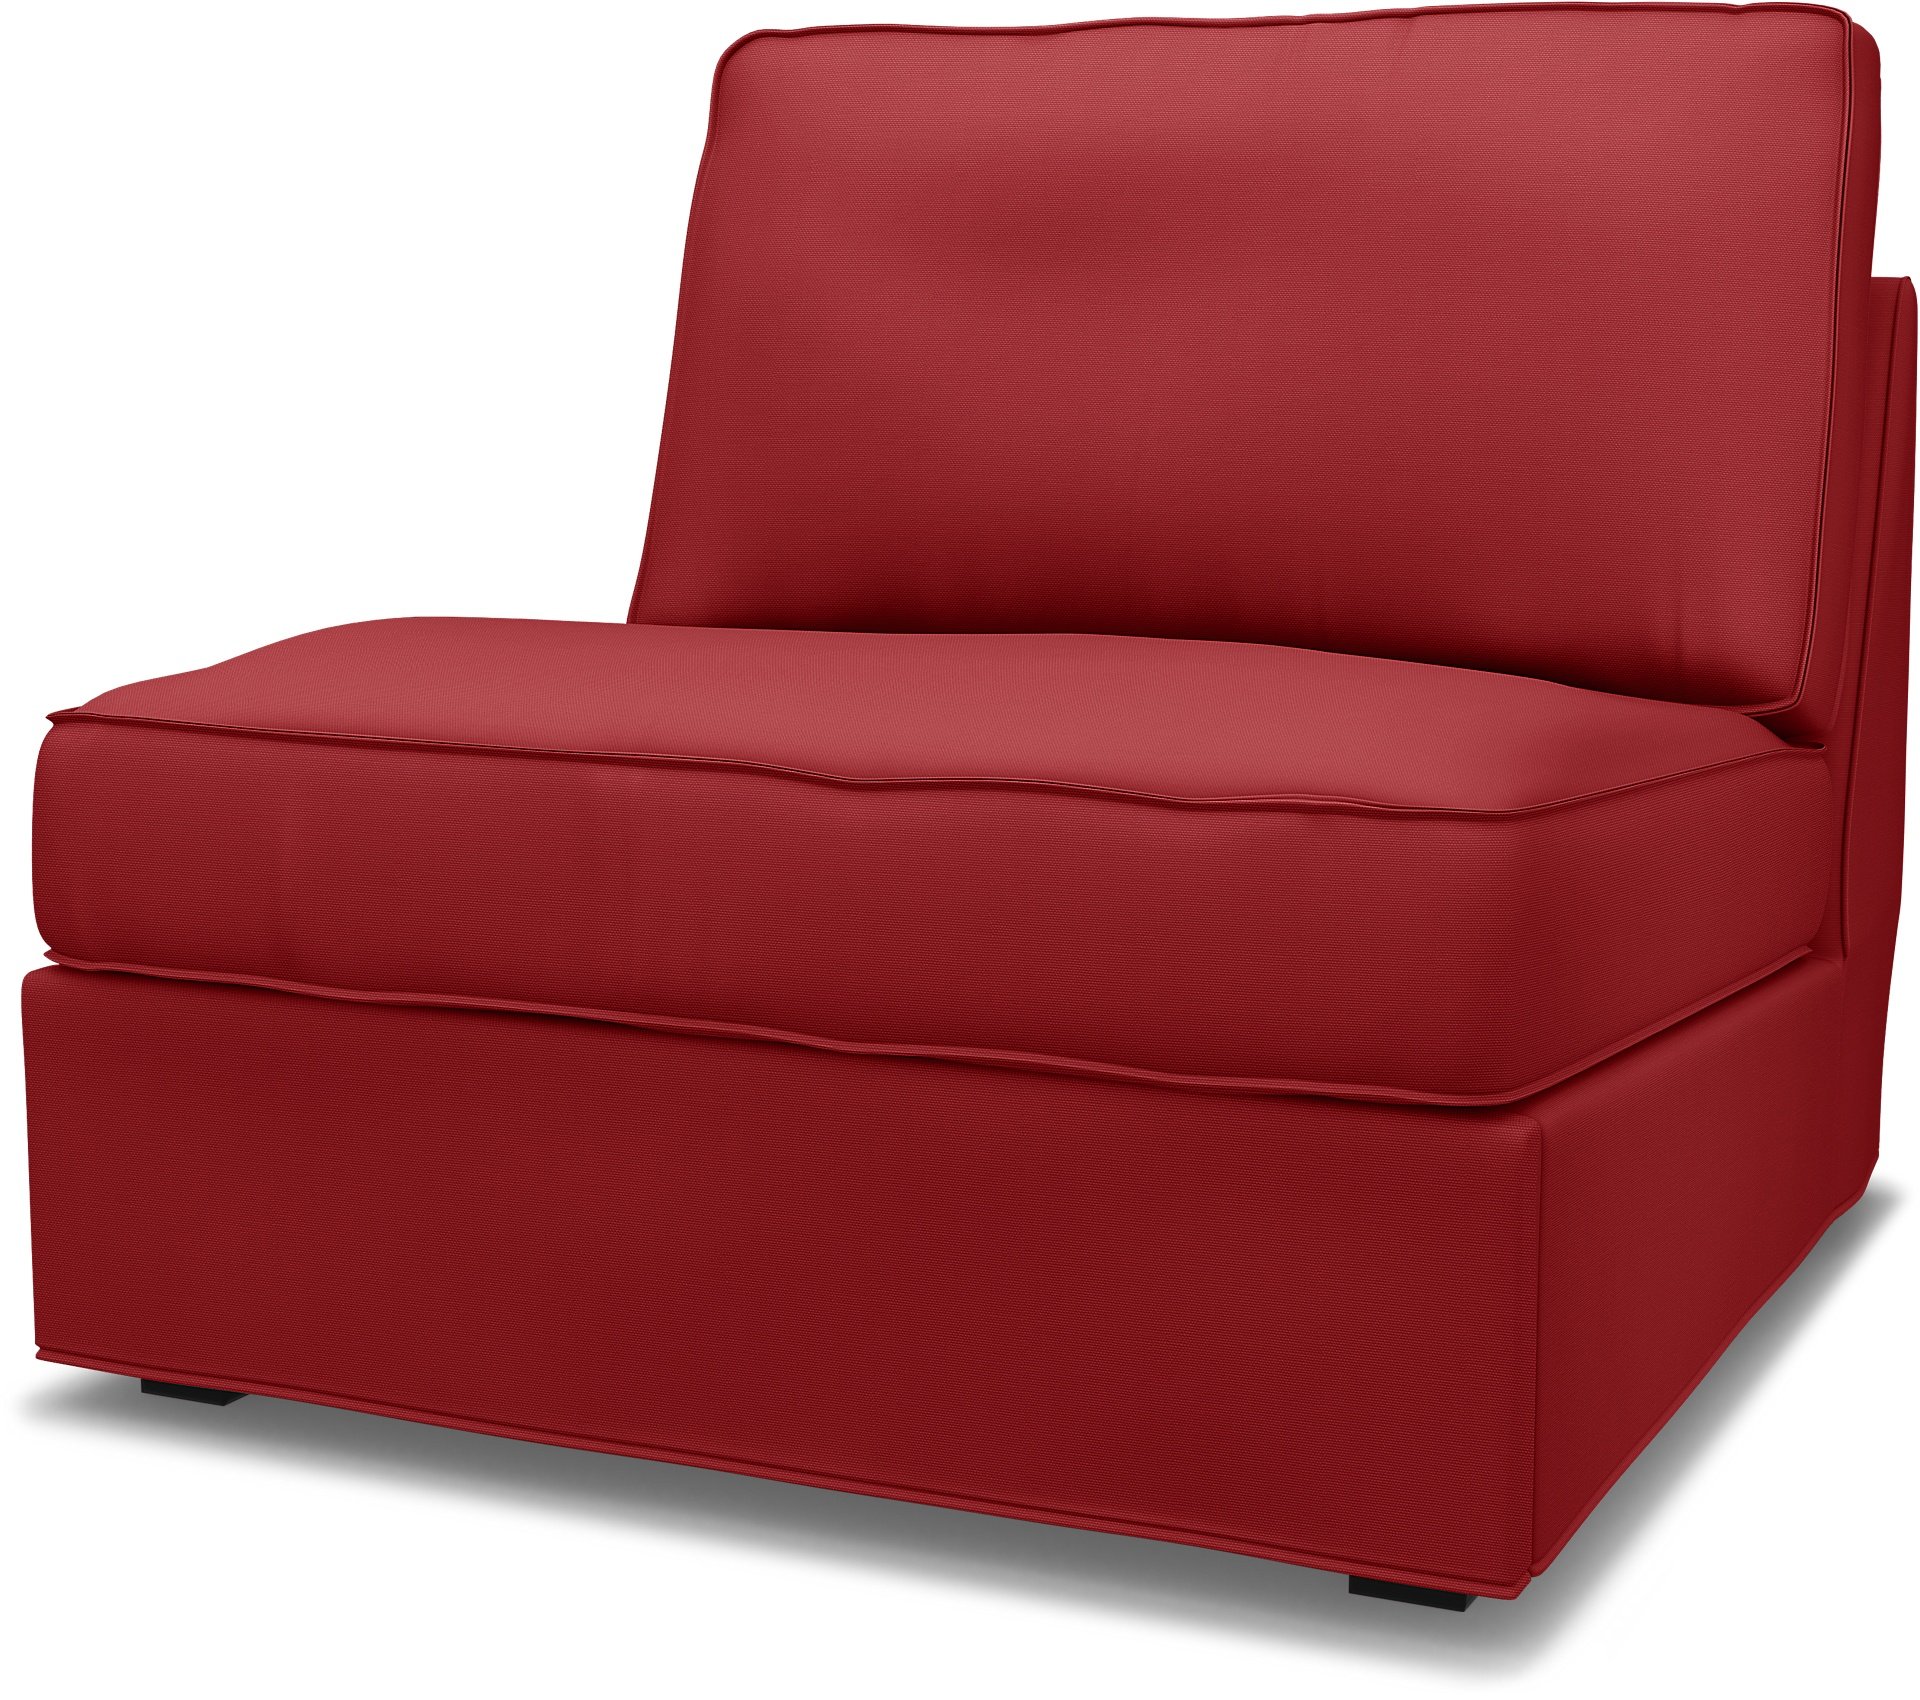 IKEA - Kivik 1 seater sofa bed, Scarlet Red, Cotton - Bemz